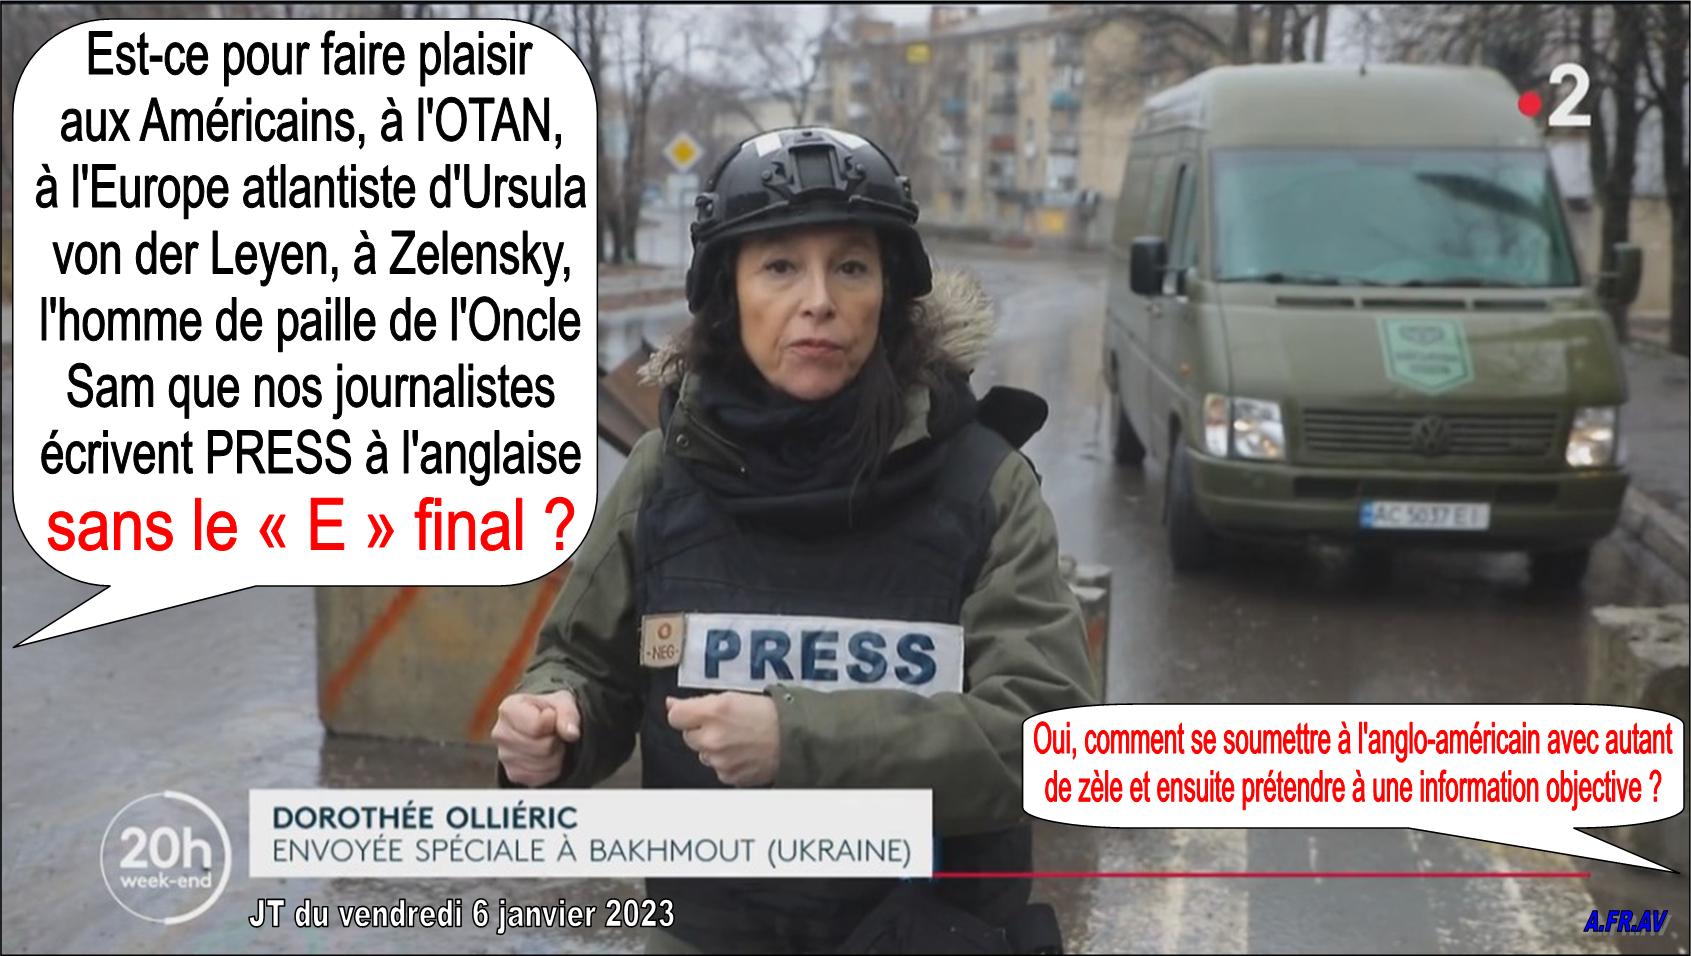 Dorothée Olliéric, journaliste envoyée spéciale à Bakhmout, Ukraine